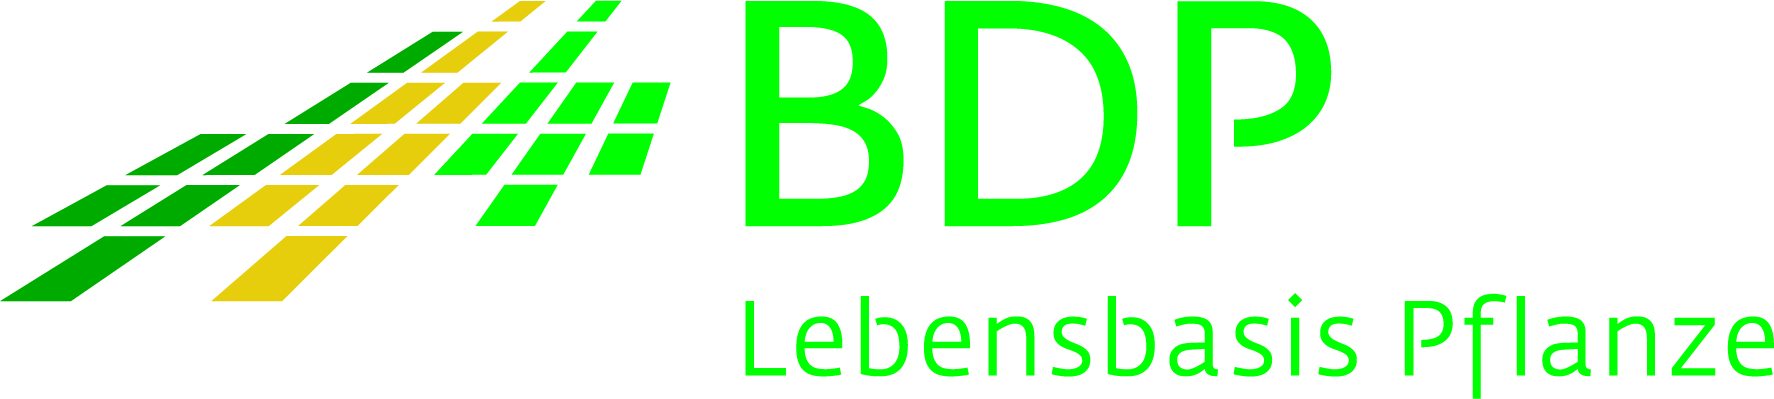 Bundesverband Deutscher Pflanzenzüchter e.V.